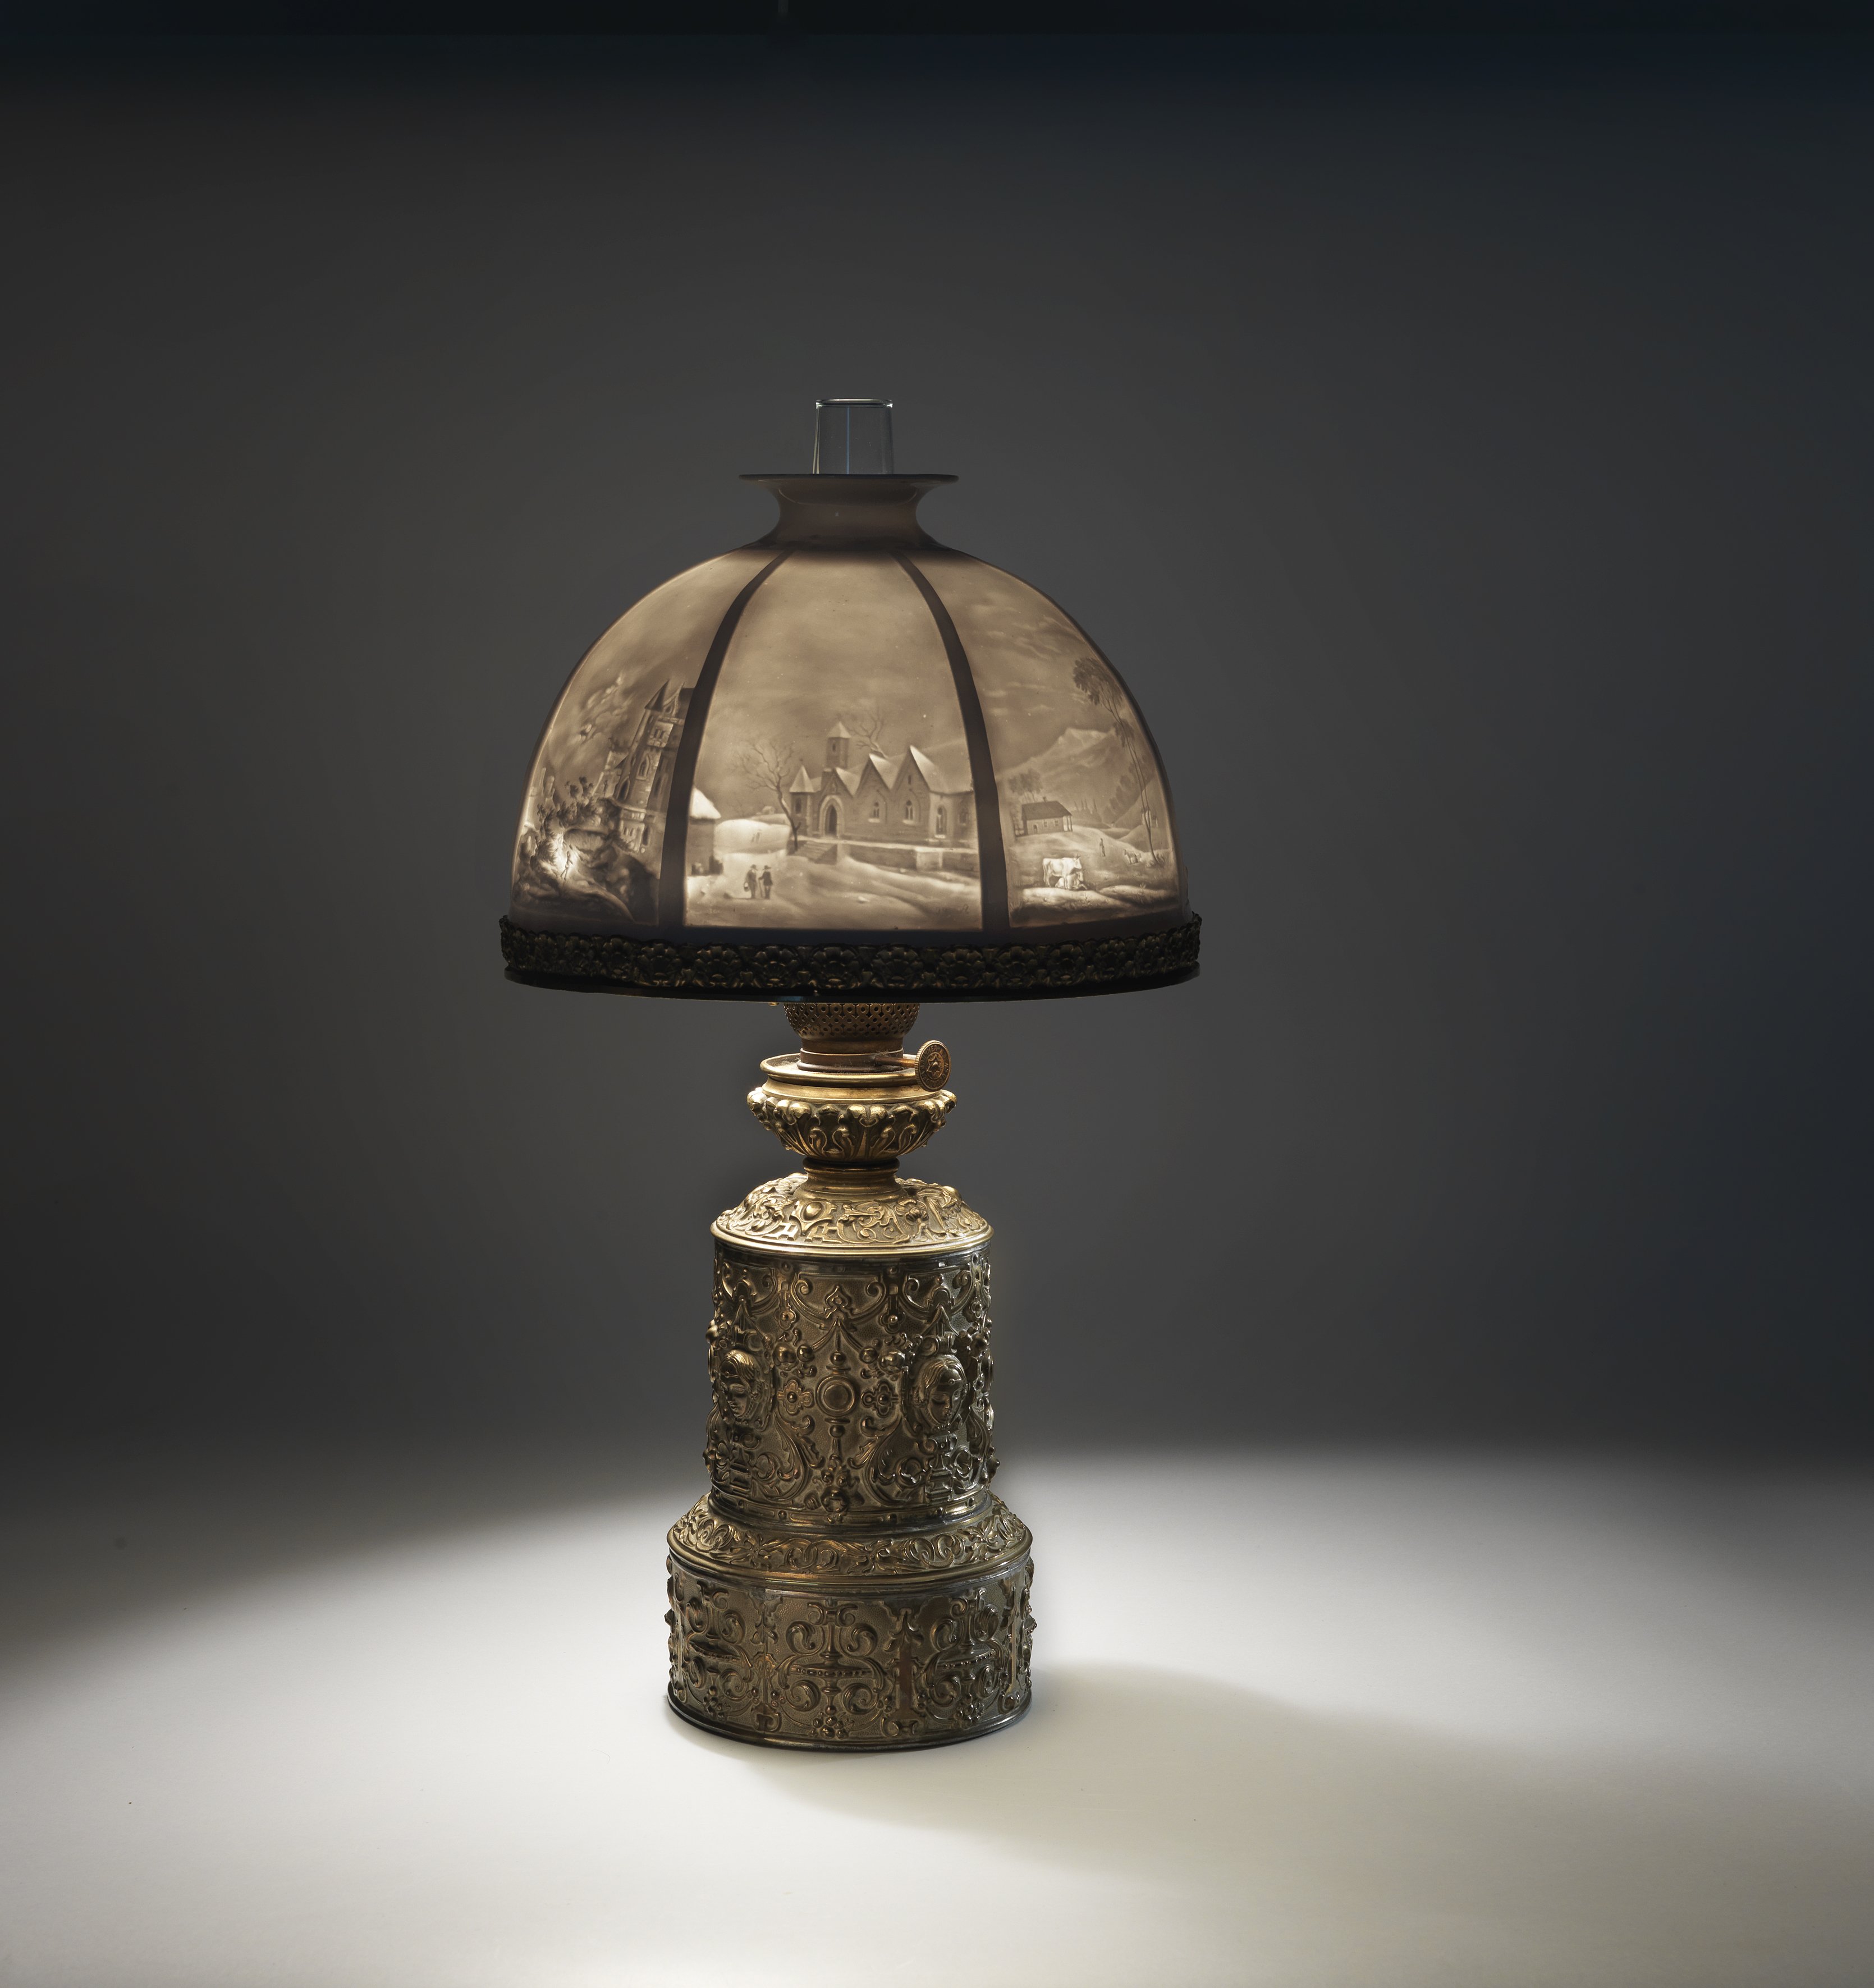 Tisch-Petroleumlampe ("Moderateur-Lampe") mit Lithophanie-Schirm (Sammlung "S", Wuppertal CC BY-NC-SA)